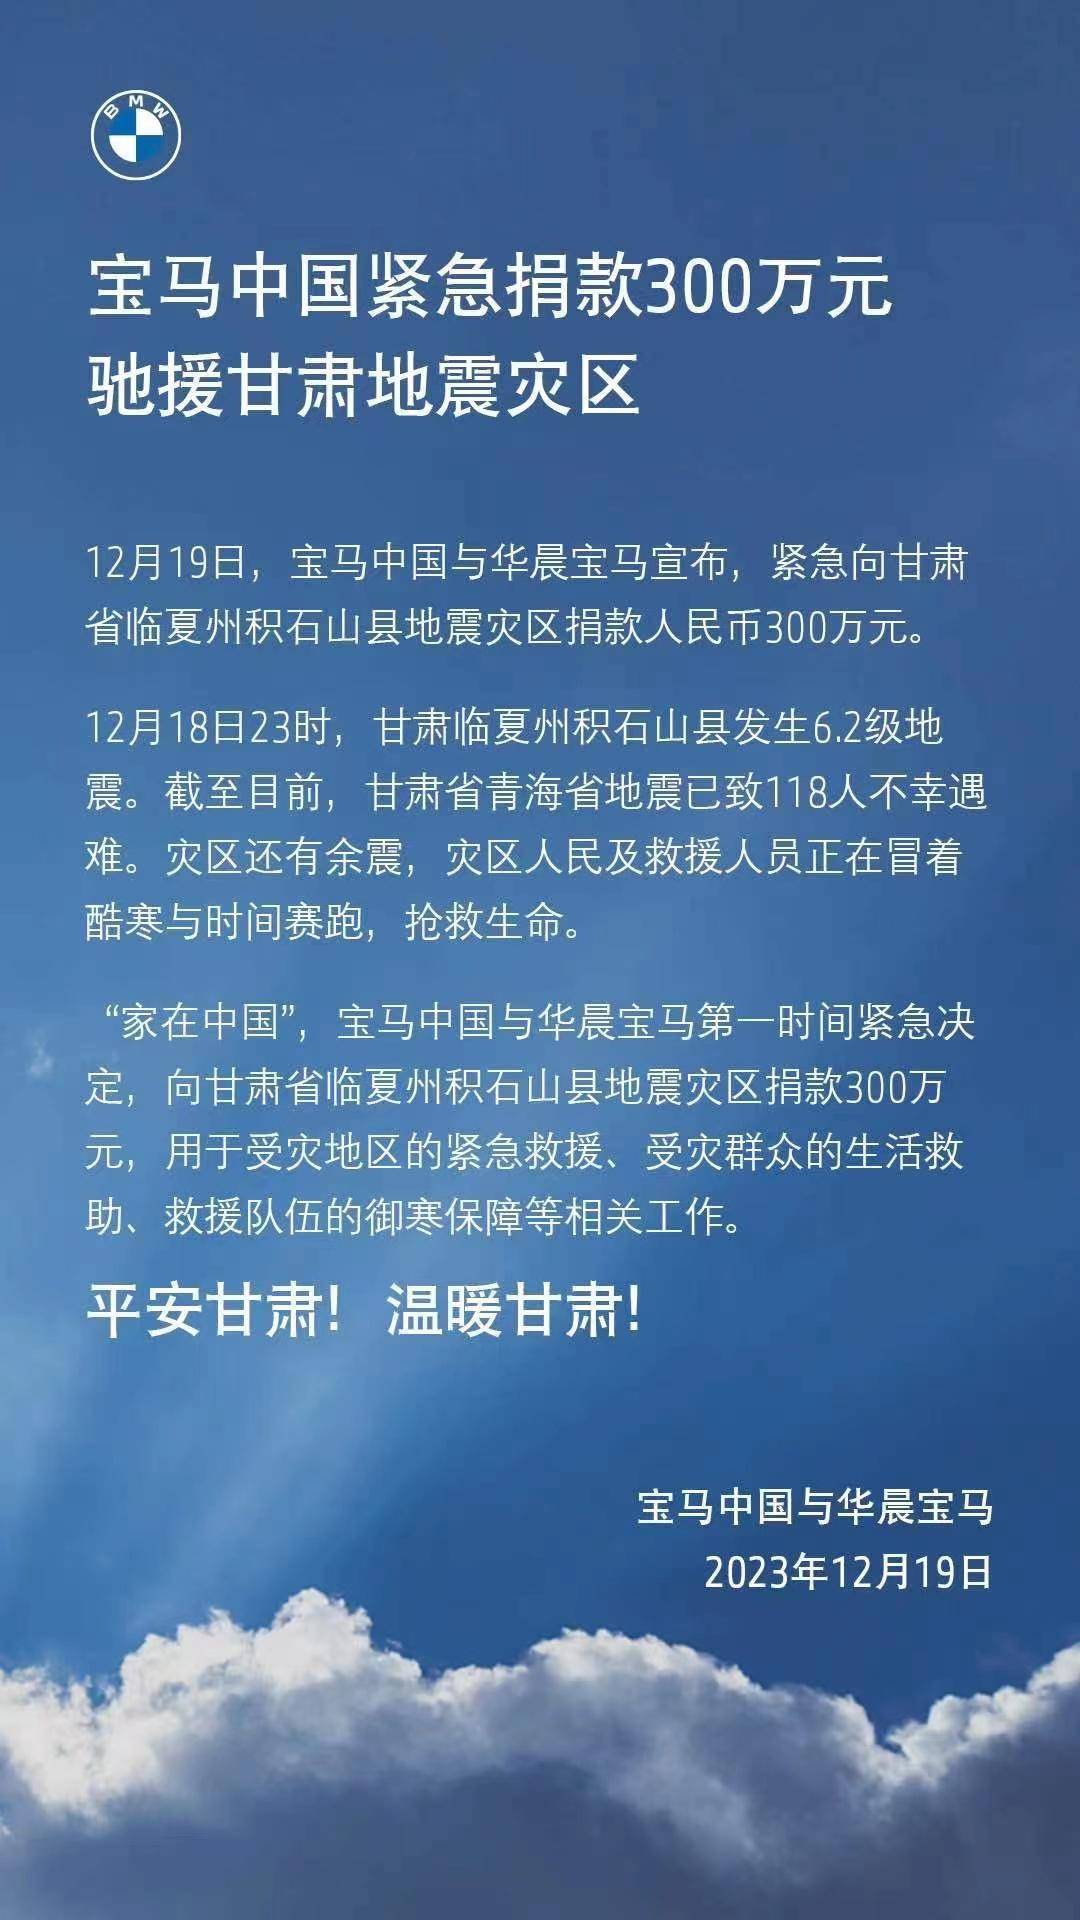 上海玉佛禅寺向郑州灾区捐款200万元